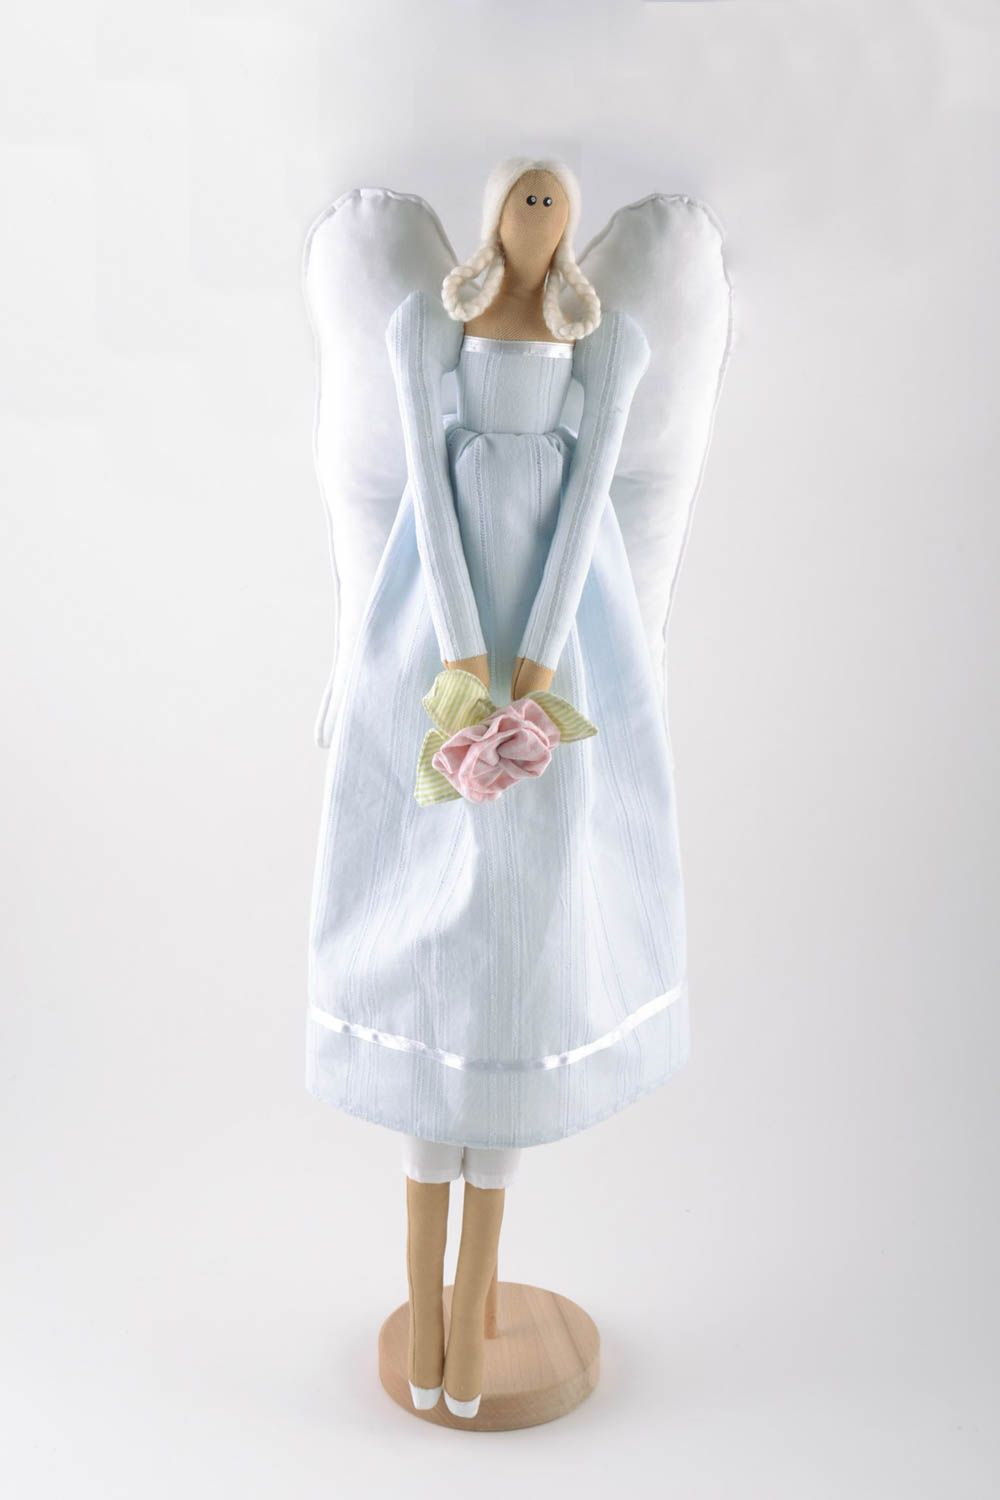 Handmade Interieur Designer Spielzeug Fee im blauen Kleid schön für Haus Dekor foto 5